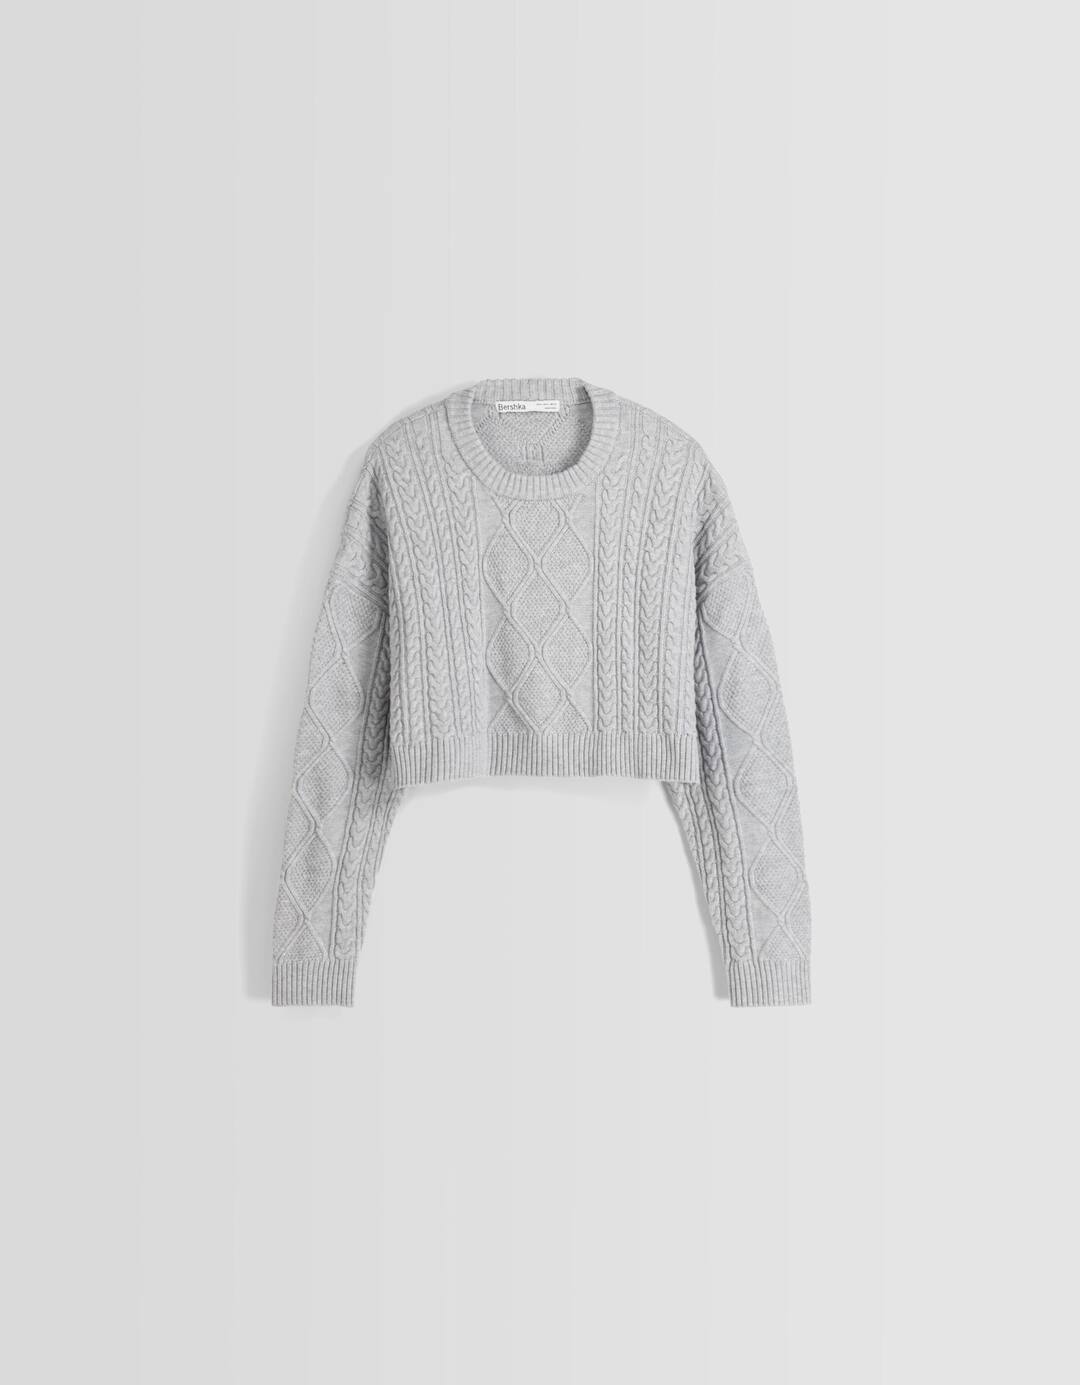 Sweater tranças